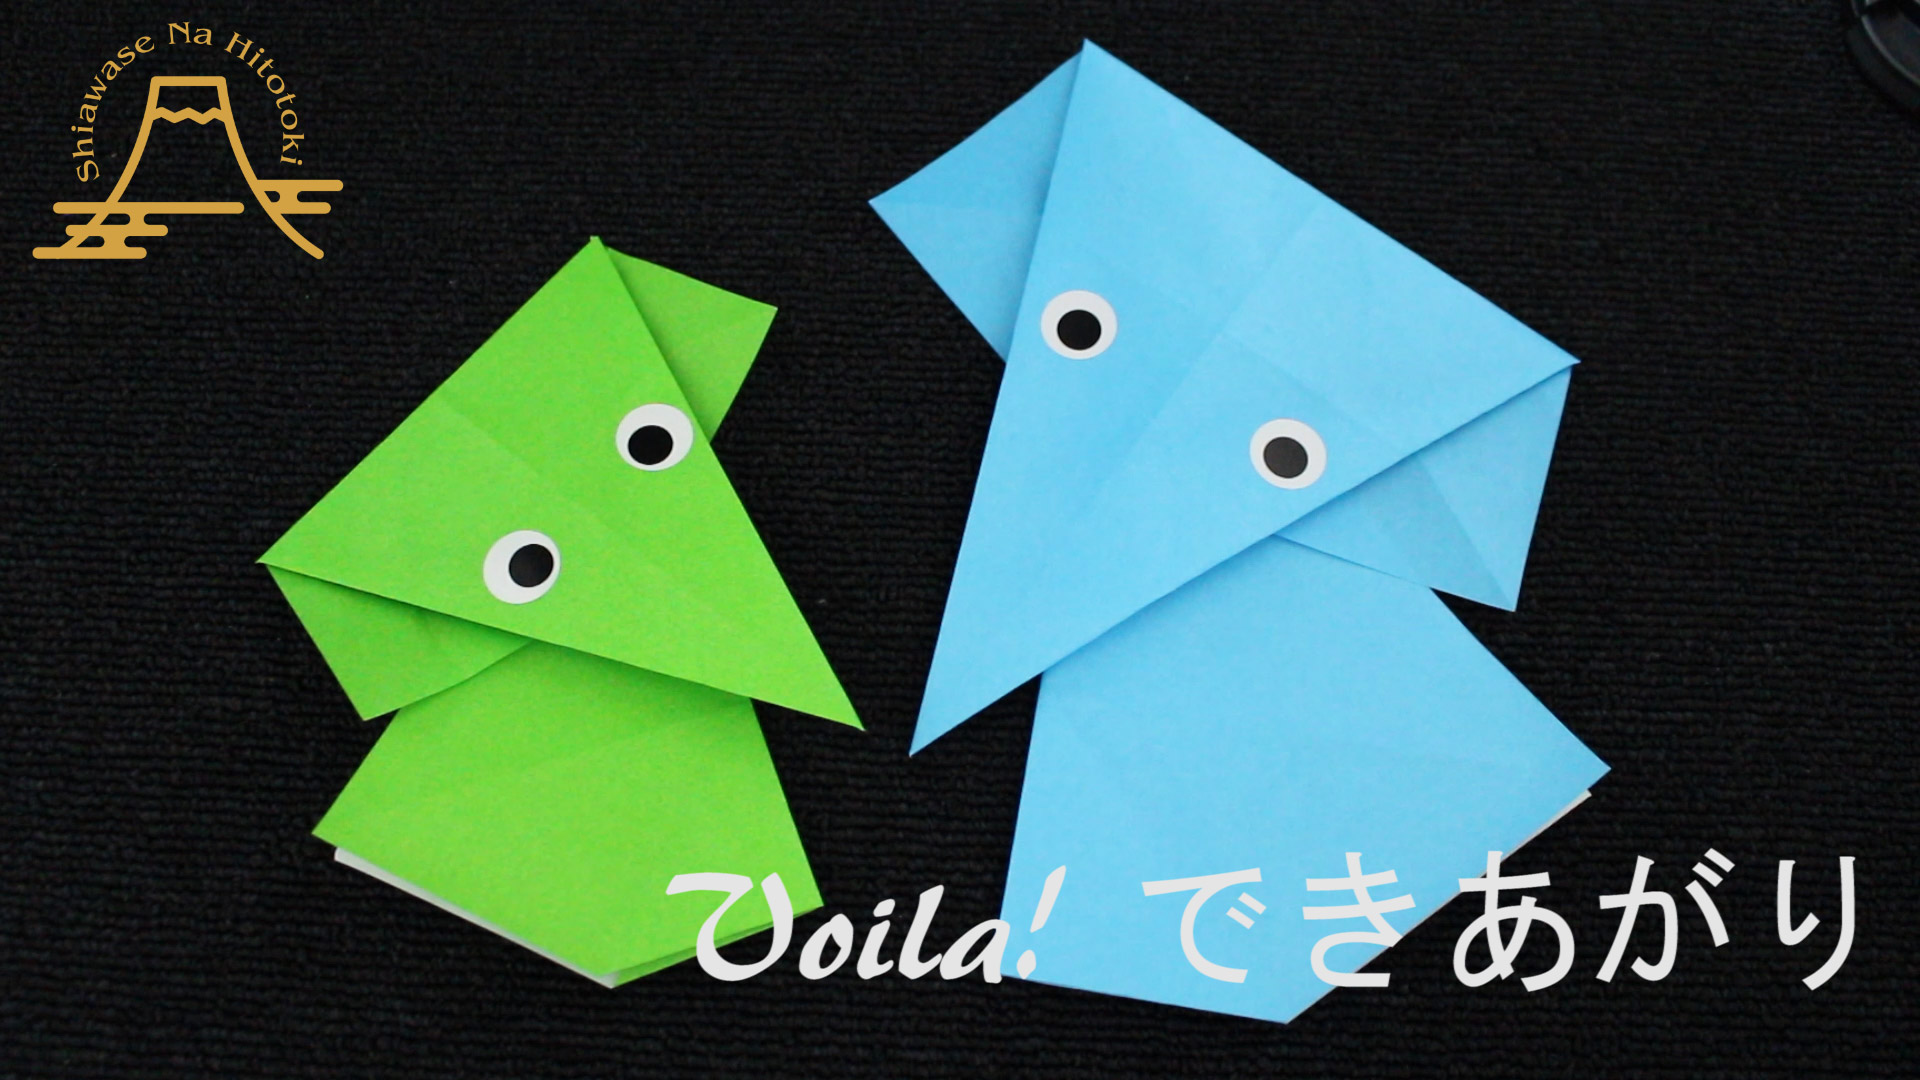 簡単 折り紙 かわいい 簡単なゾウさんの折り方 折り紙の折り方 幸せなひと時